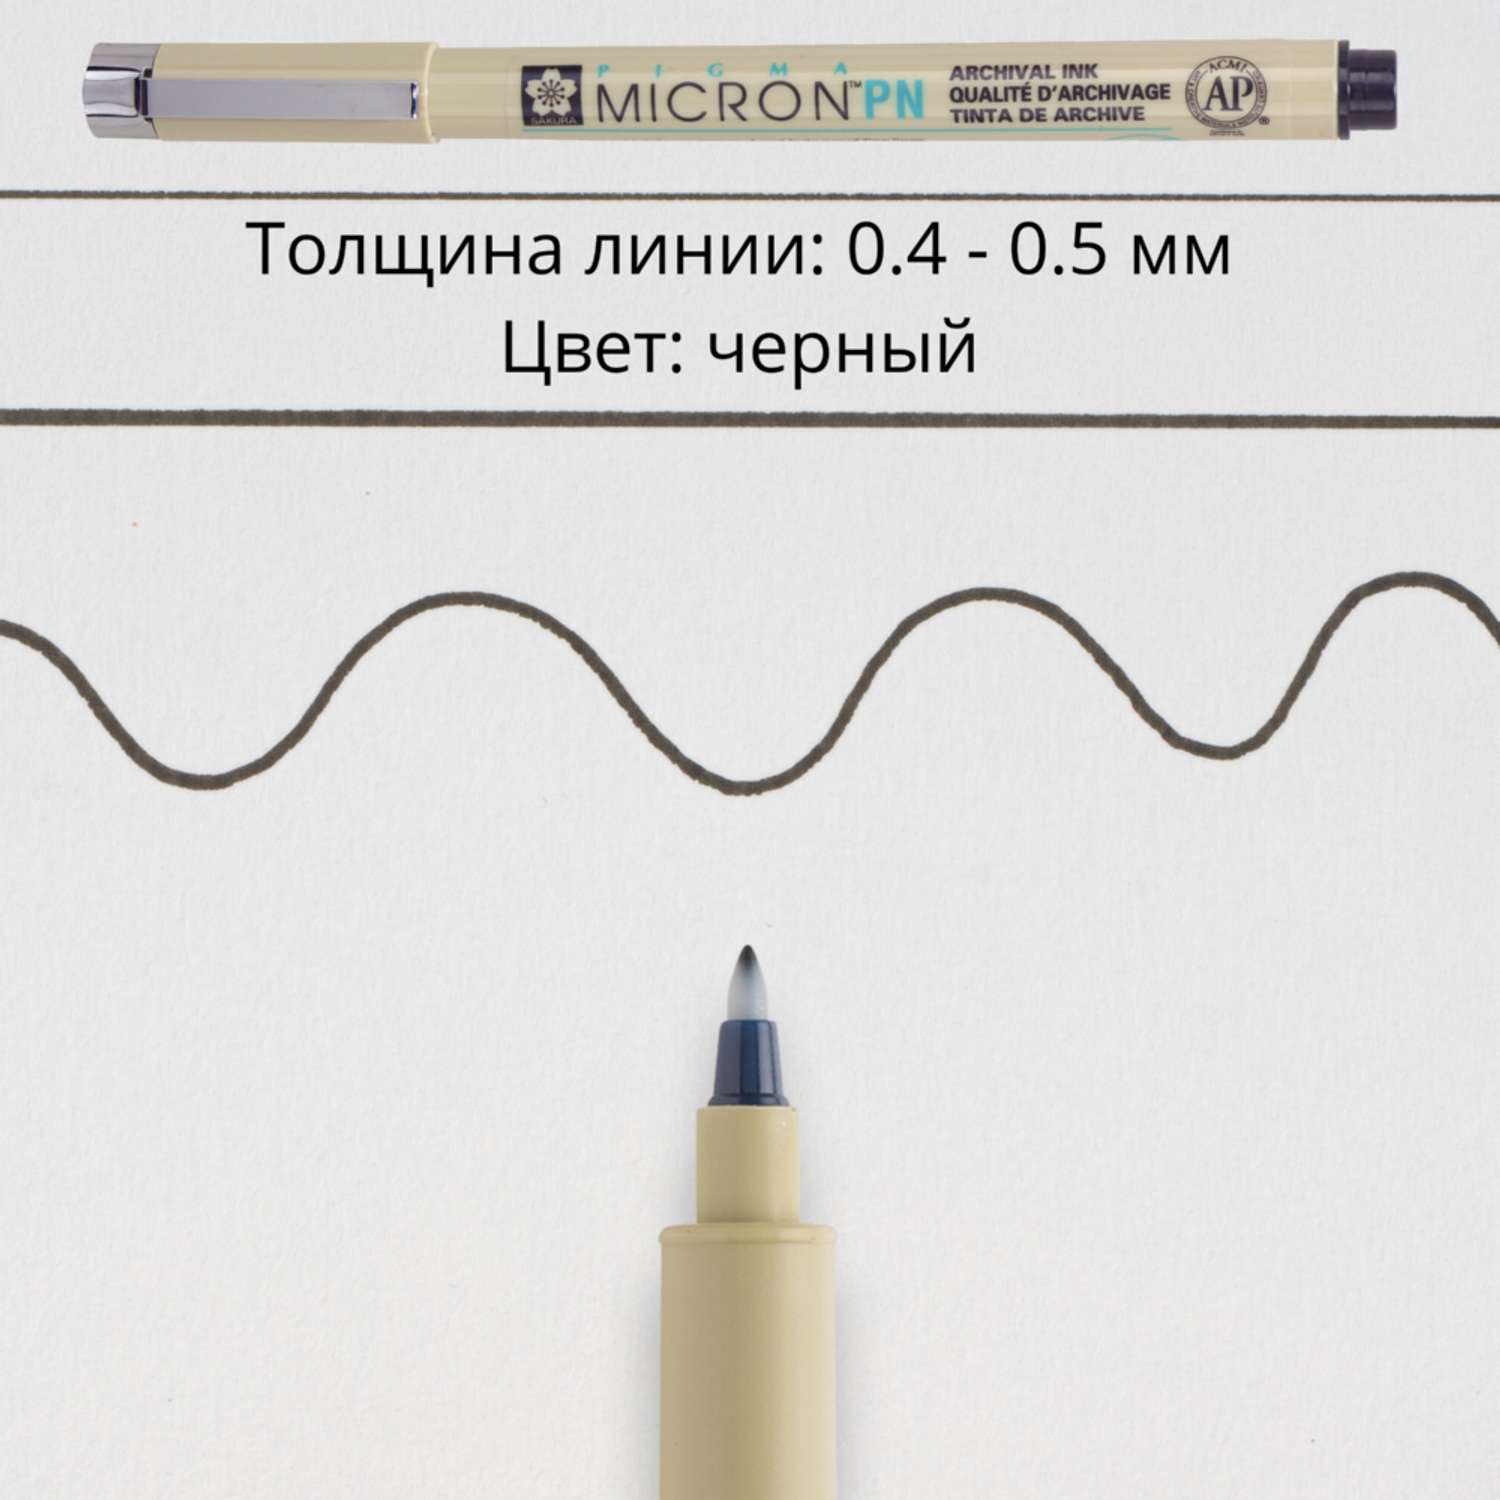 Ручка капиллярная Sakura Pigma Micron PN 0.4-0.5 мм. цвет чернил: черный - фото 3